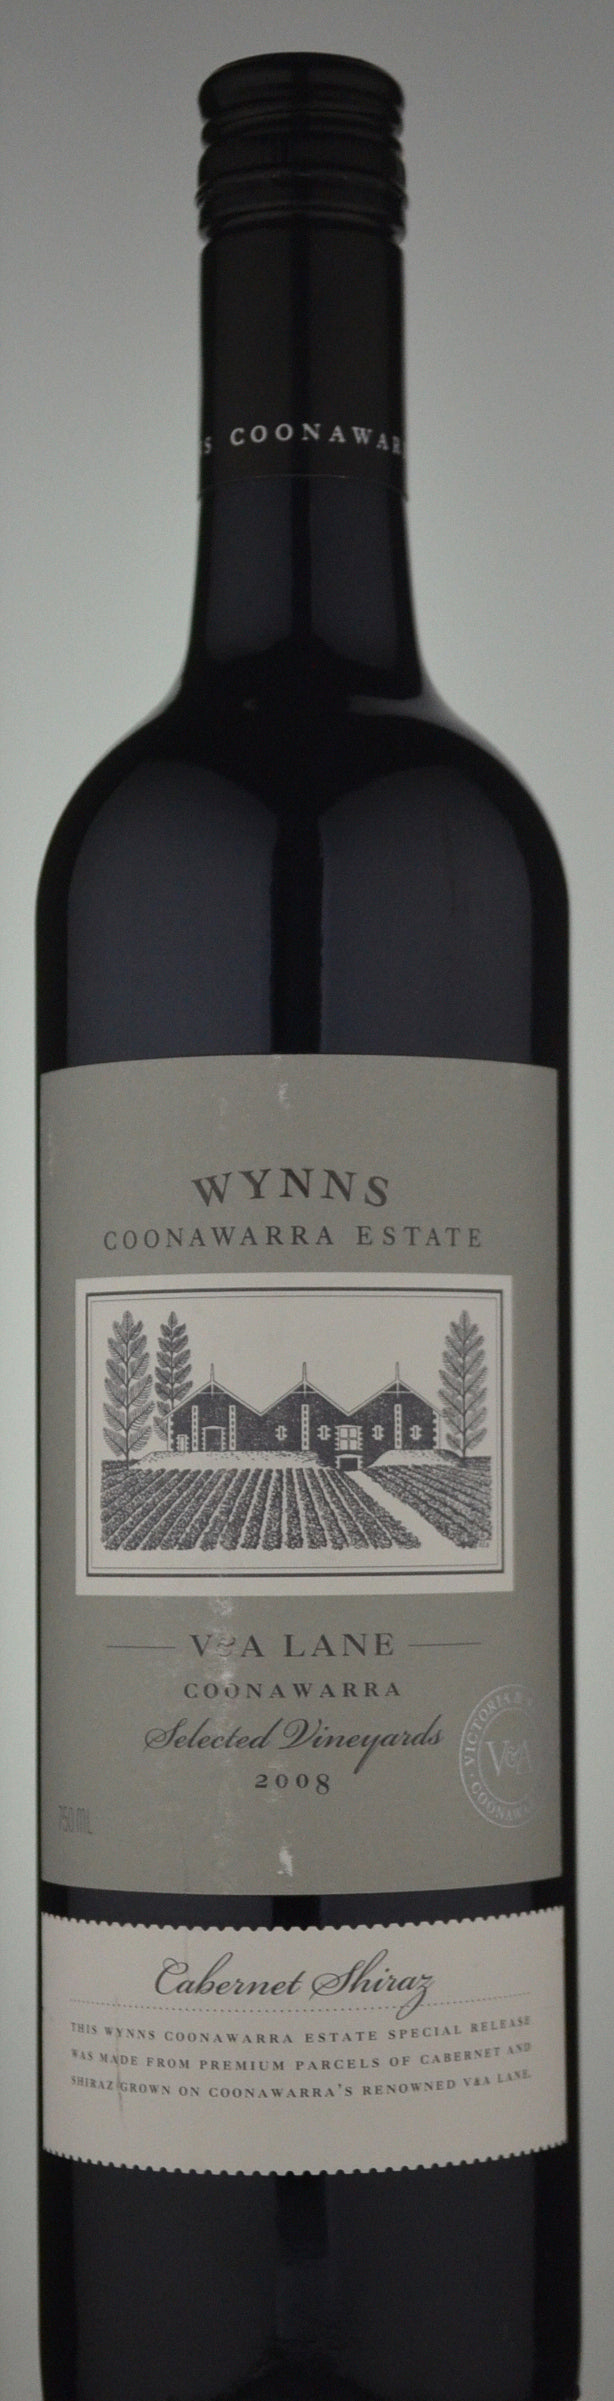 Wynns Coonawarra Estate V & A Lane Selected Vineyards Cabernet Shiraz 2008